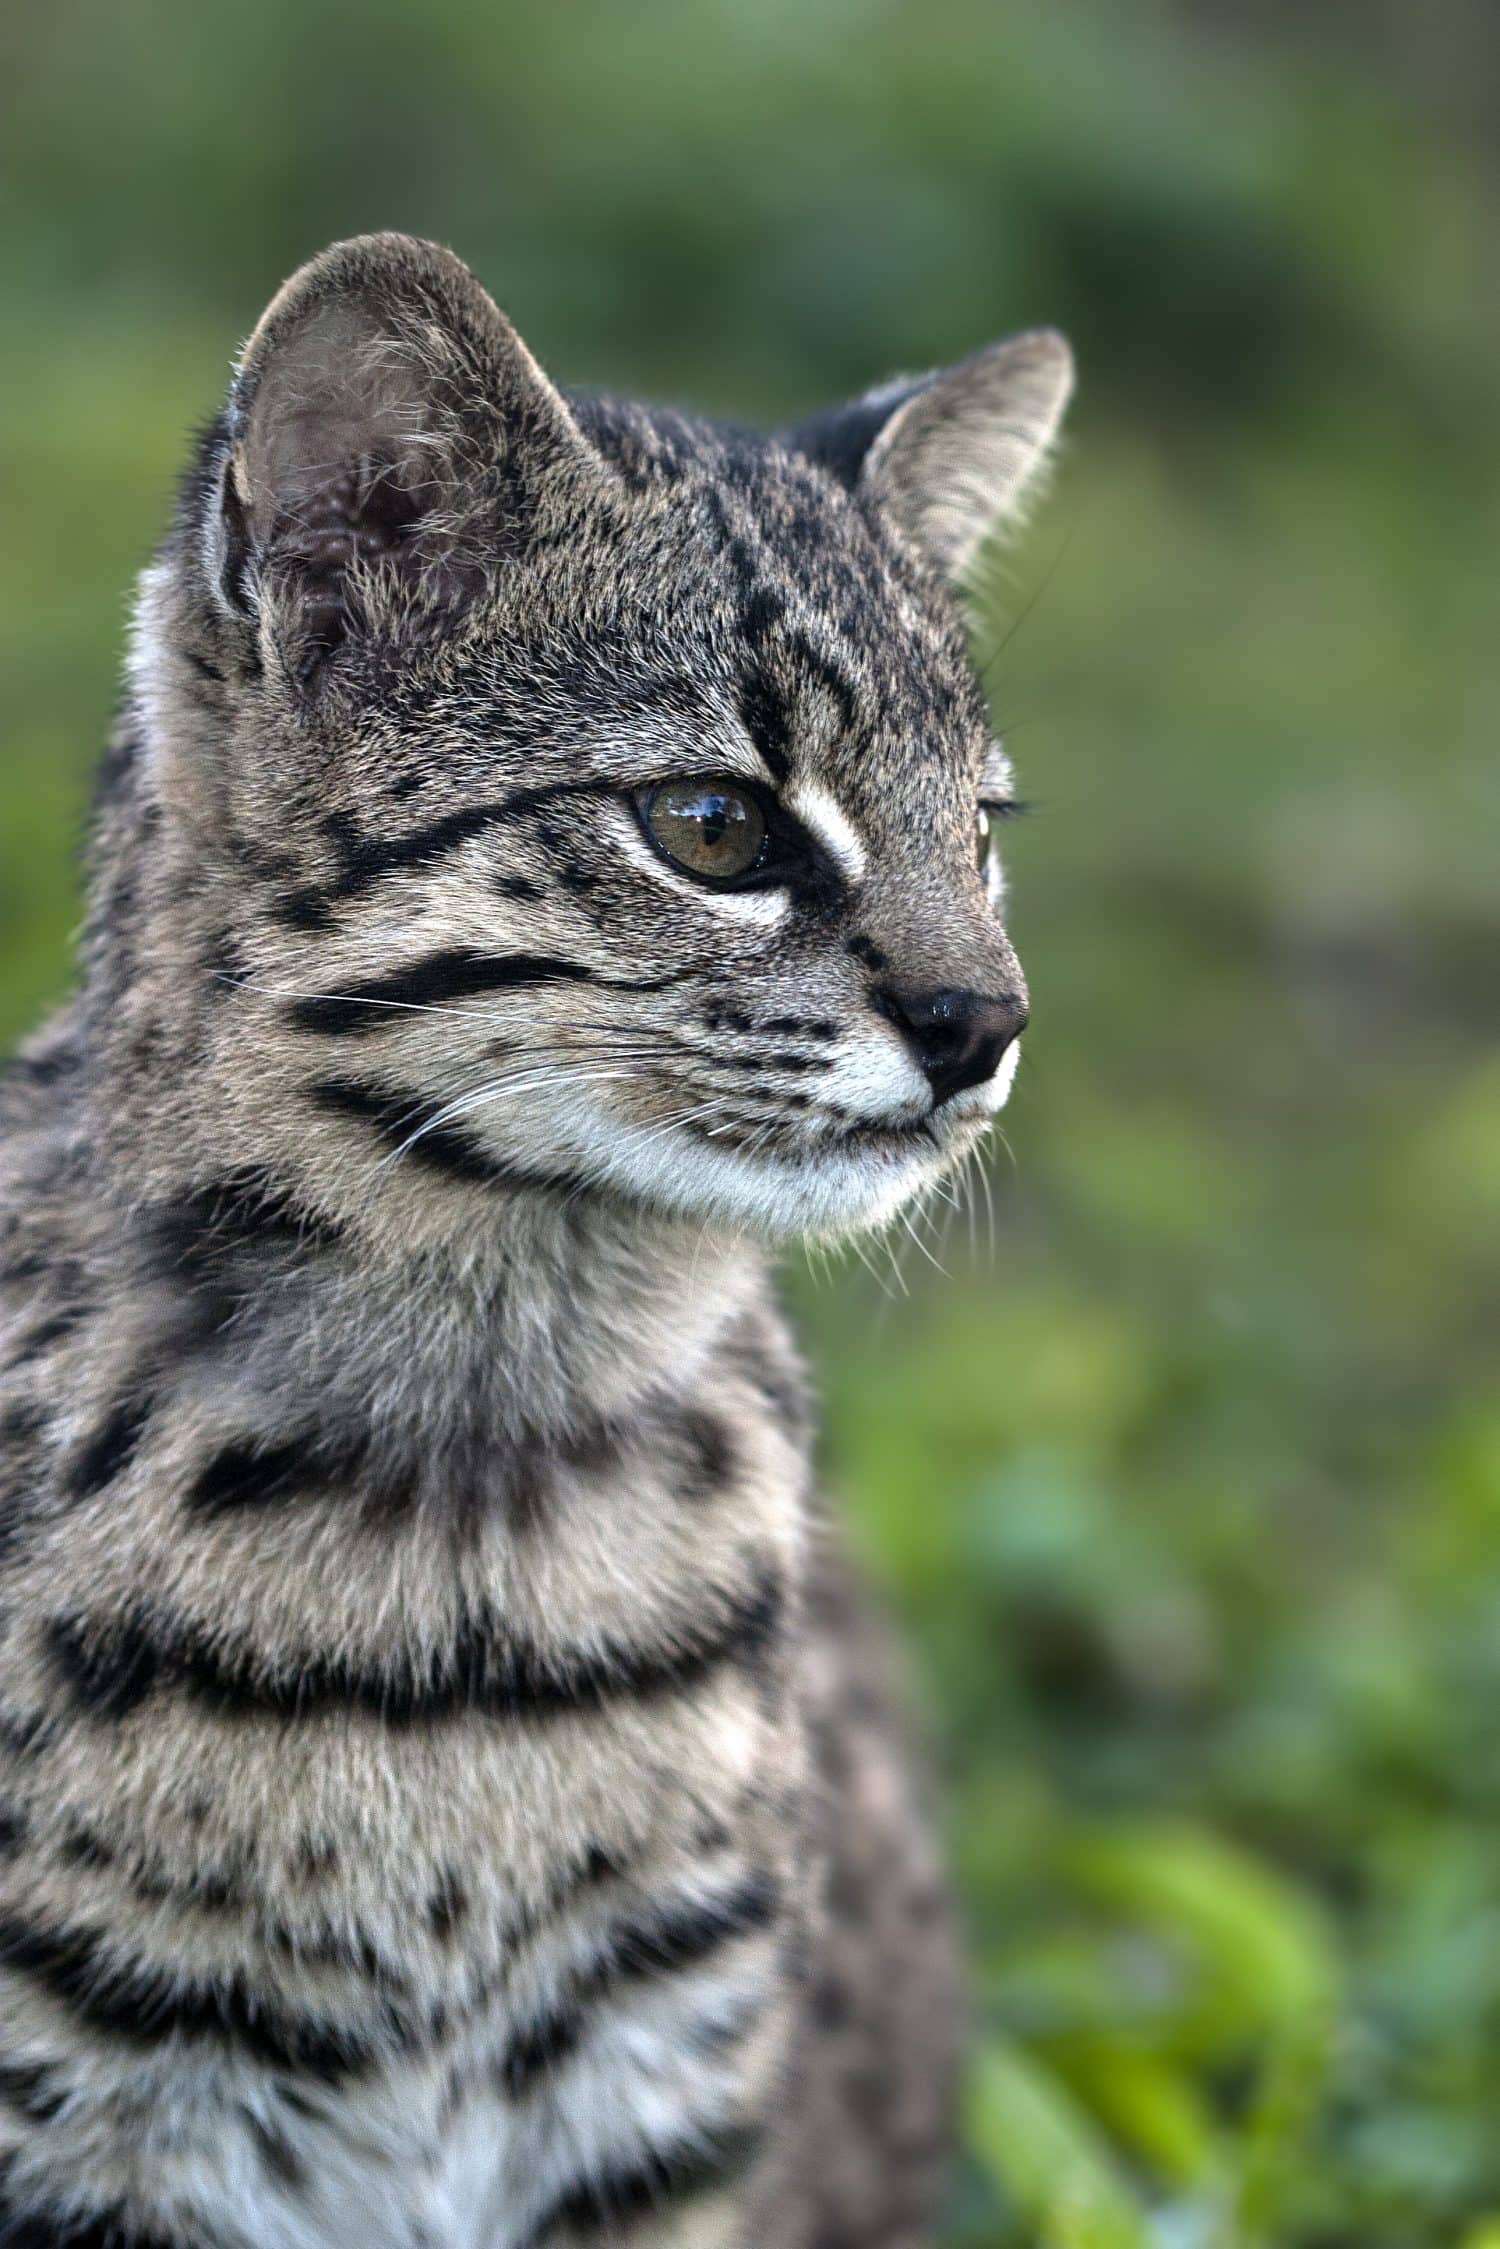 Geoffroy's cat (Leopardus geoffroyi) in natural habitat